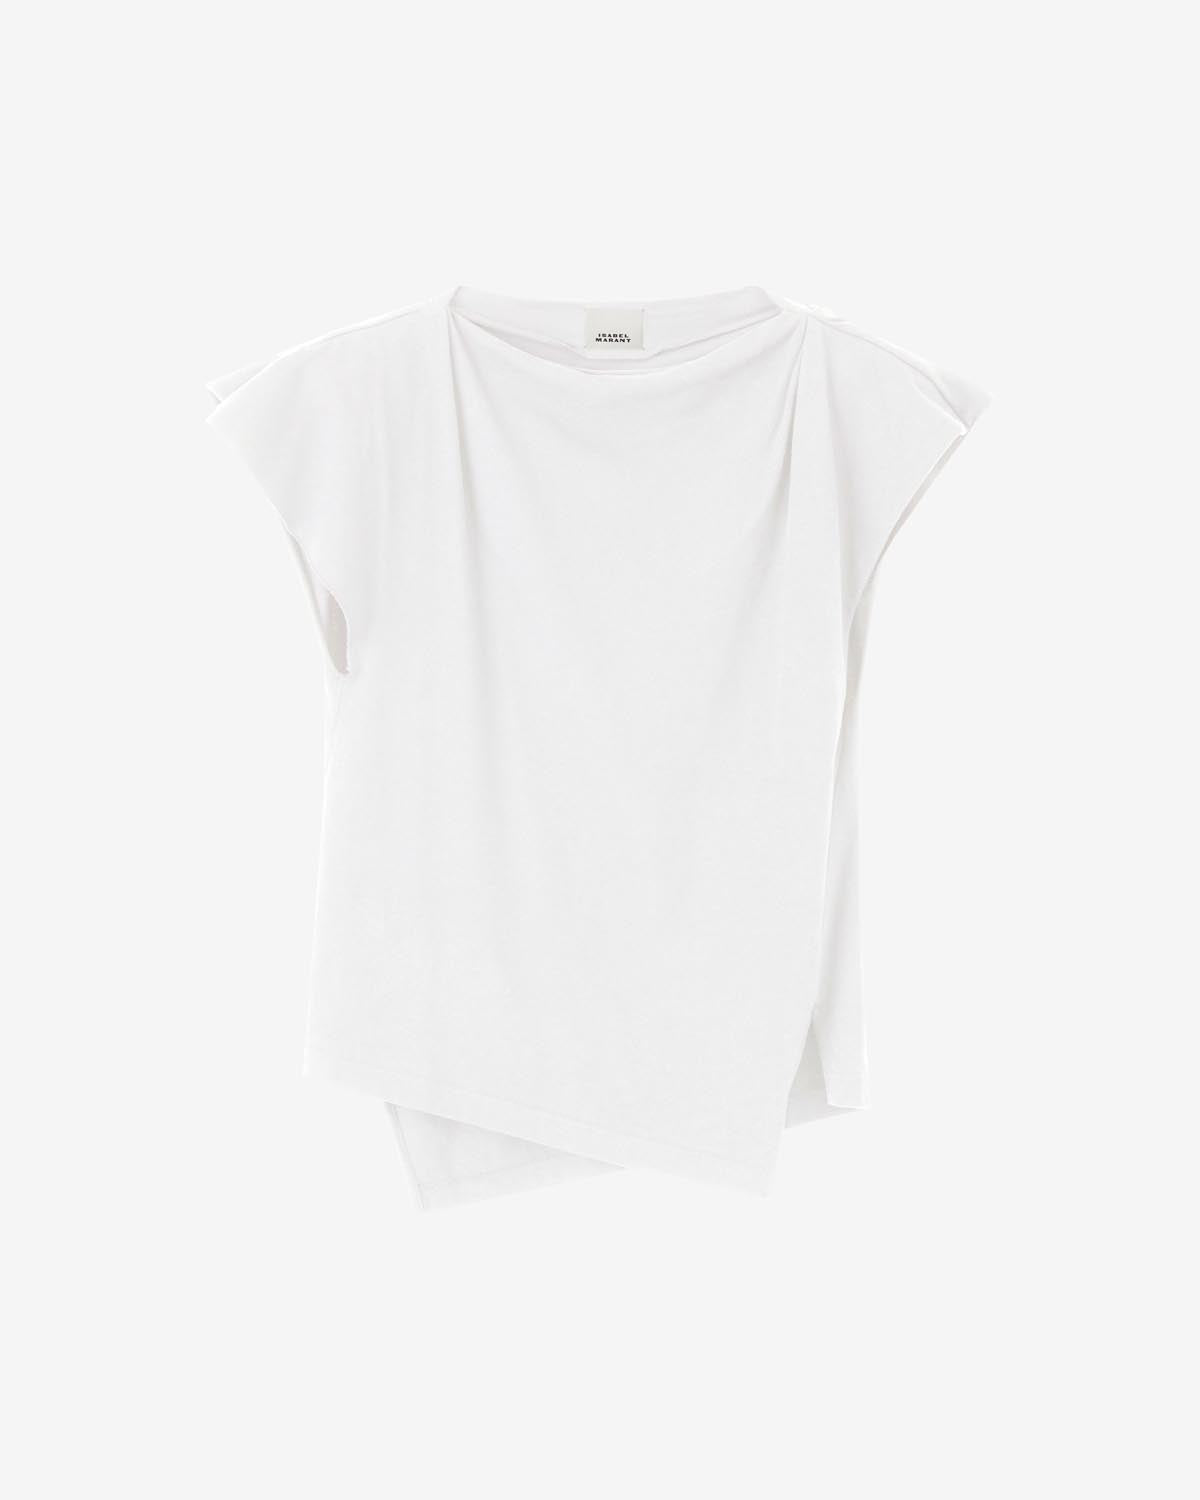 세바니 티셔츠 Woman 하얀색 1